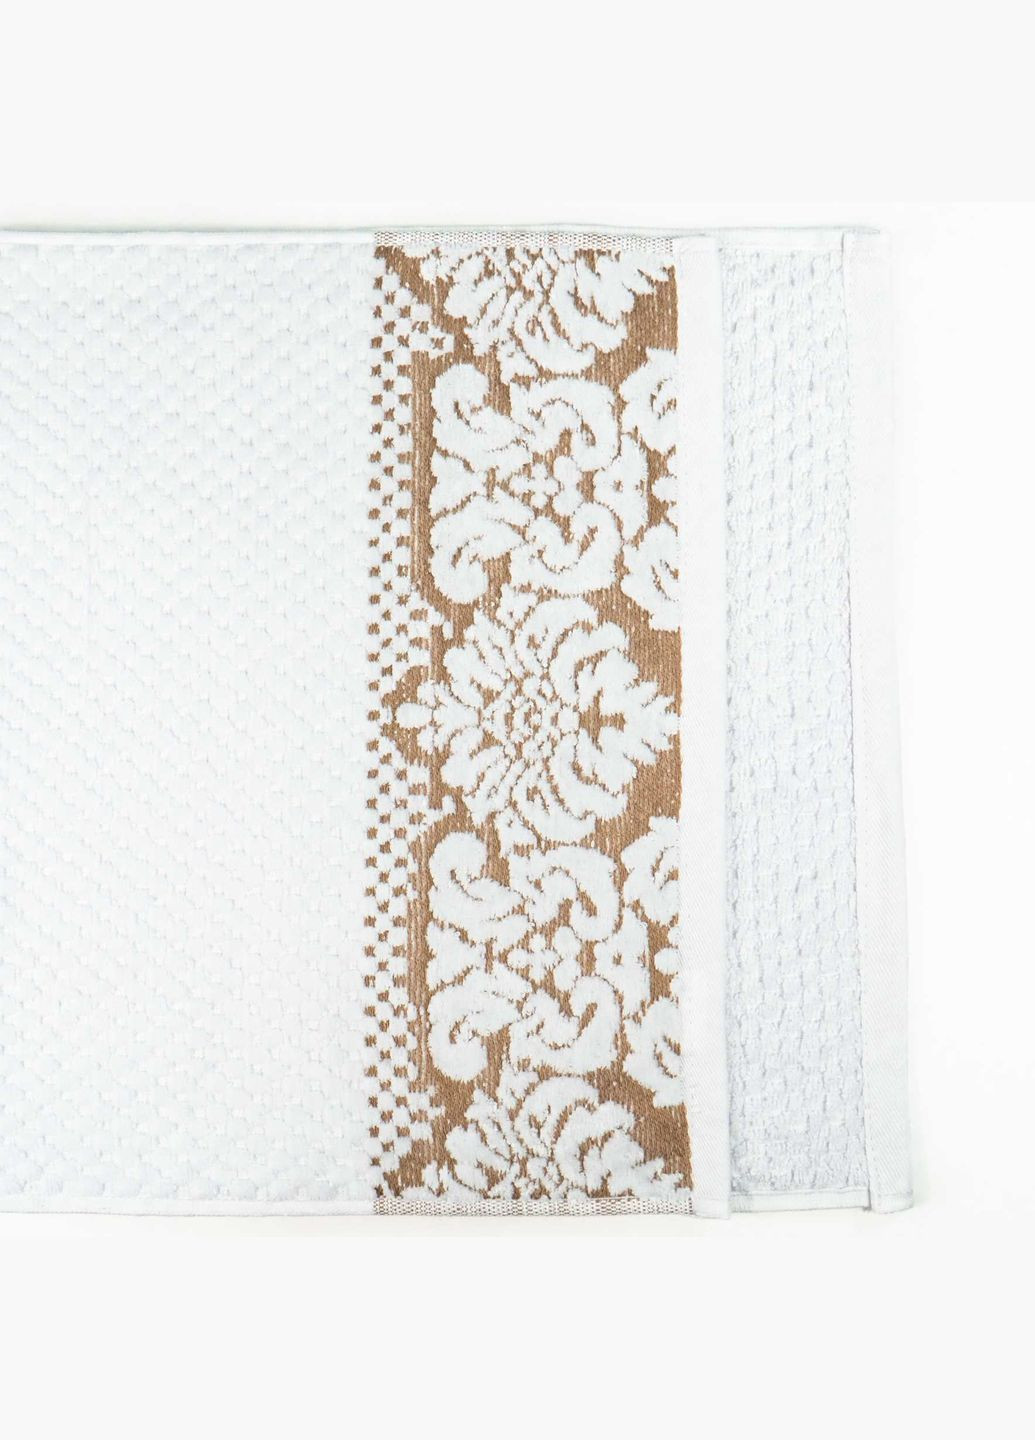 GM Textile банное махровое полотенце 70x140см damask премиум качества жаккардовое с велюром 550г/м2 () белый производство -